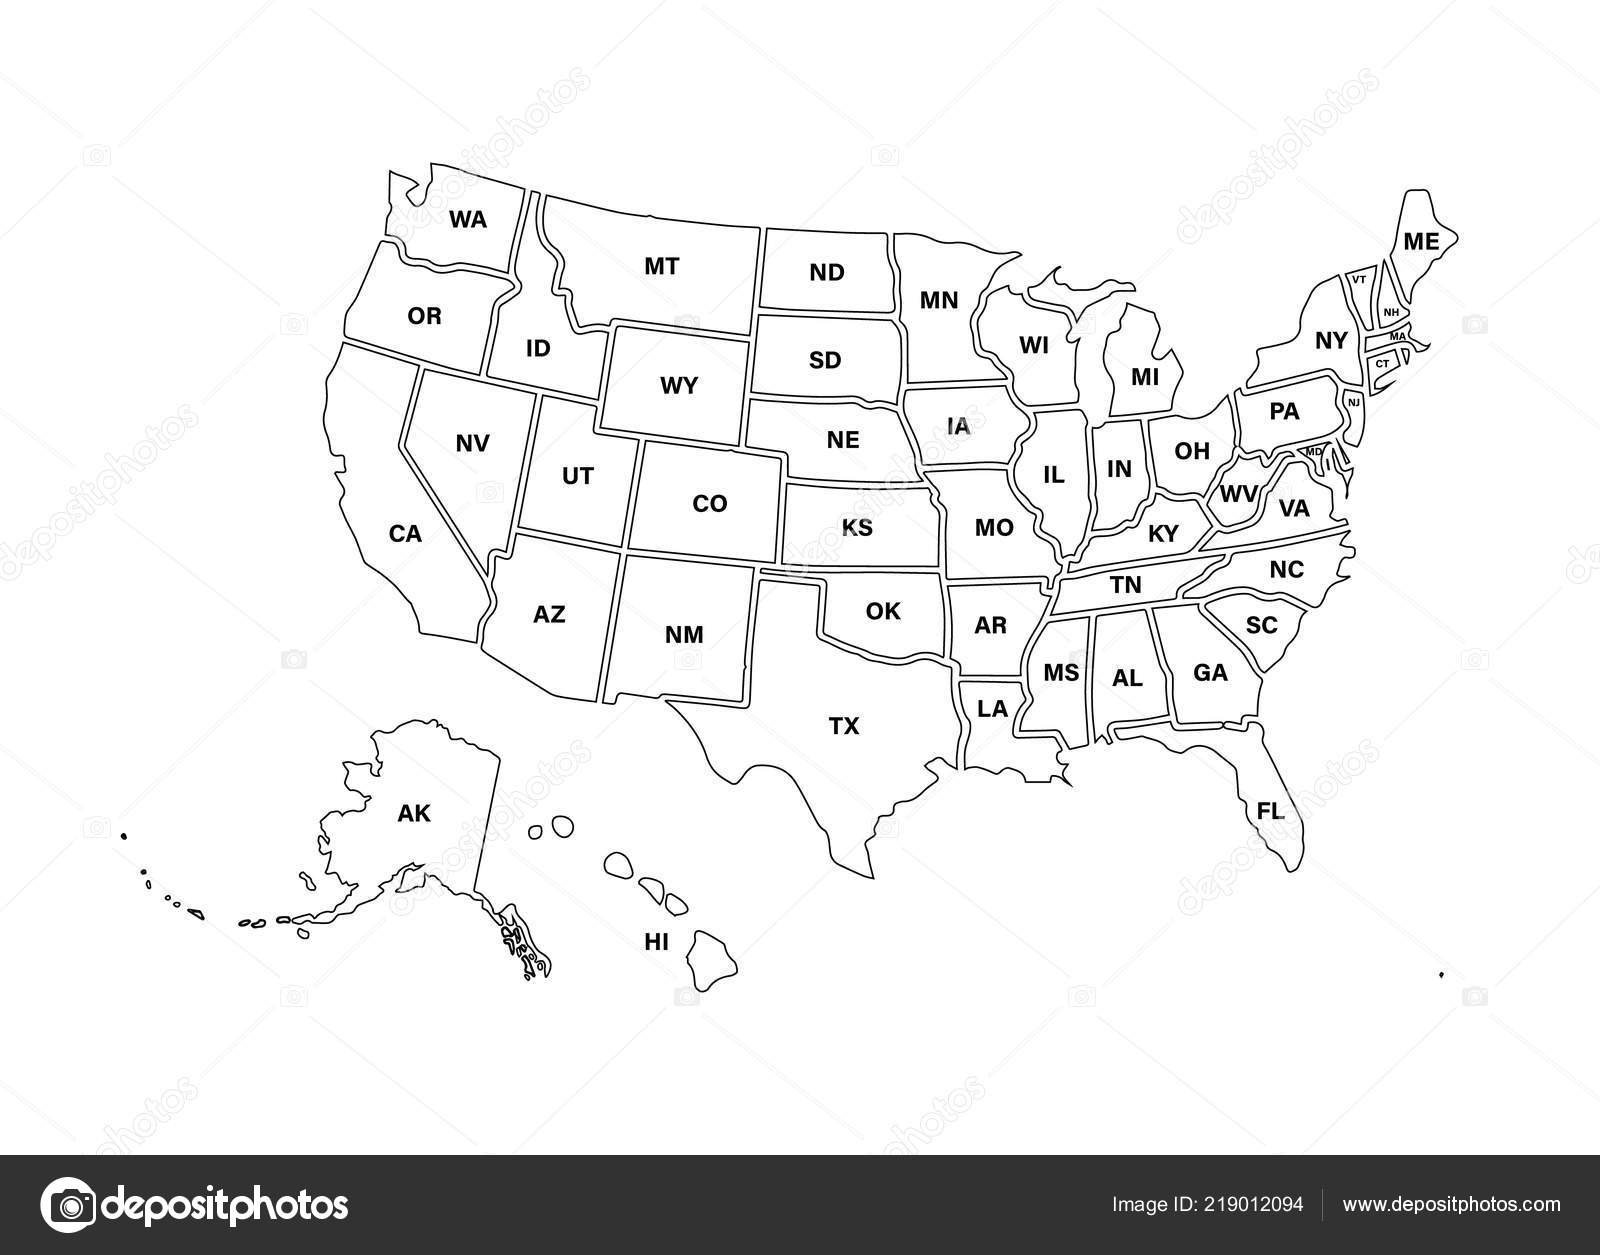 Bản đồ Mỹ tương tự trống trên nền trắng cung cấp cho bạn một trải nghiệm tuyệt vời để tìm hiểu về các bang và thành phố của nước Mỹ. Với thiết kế đơn giản và tinh tế, bạn có thể tập trung vào mọi chi tiết nhỏ mà không bị phân tâm.